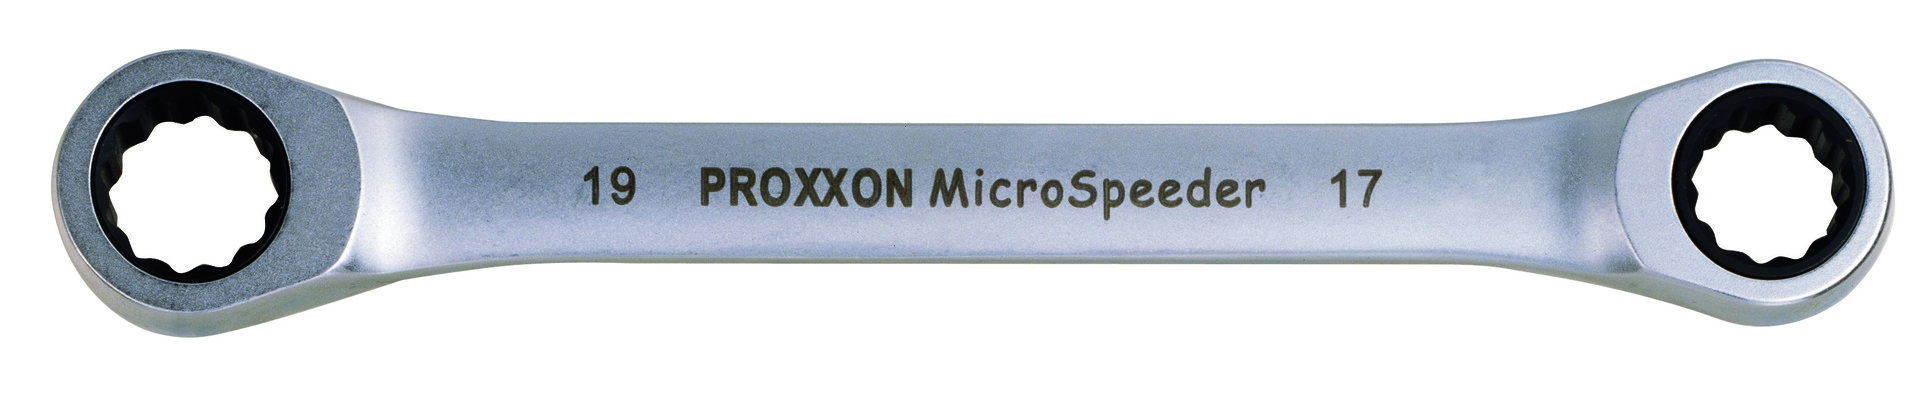 Proxxon Micro-Speeder Ratschenschlüssel 22x24mm